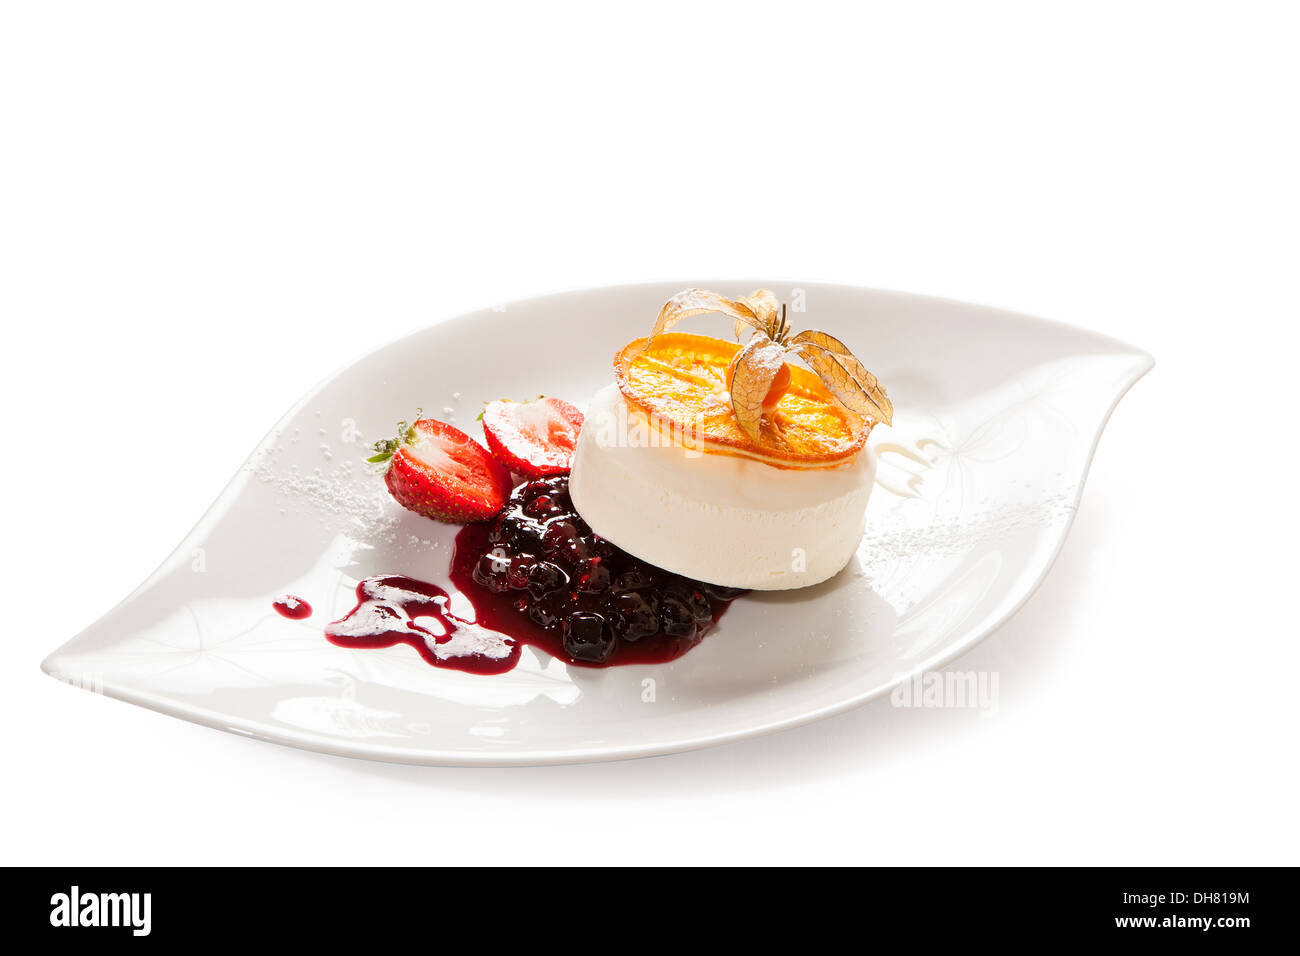 Vanilleeis mit Heidelbeer-Kompott serviert auf einem Teller mit Erdbeeren und karamellisierten Orangenscheibe Stockfoto